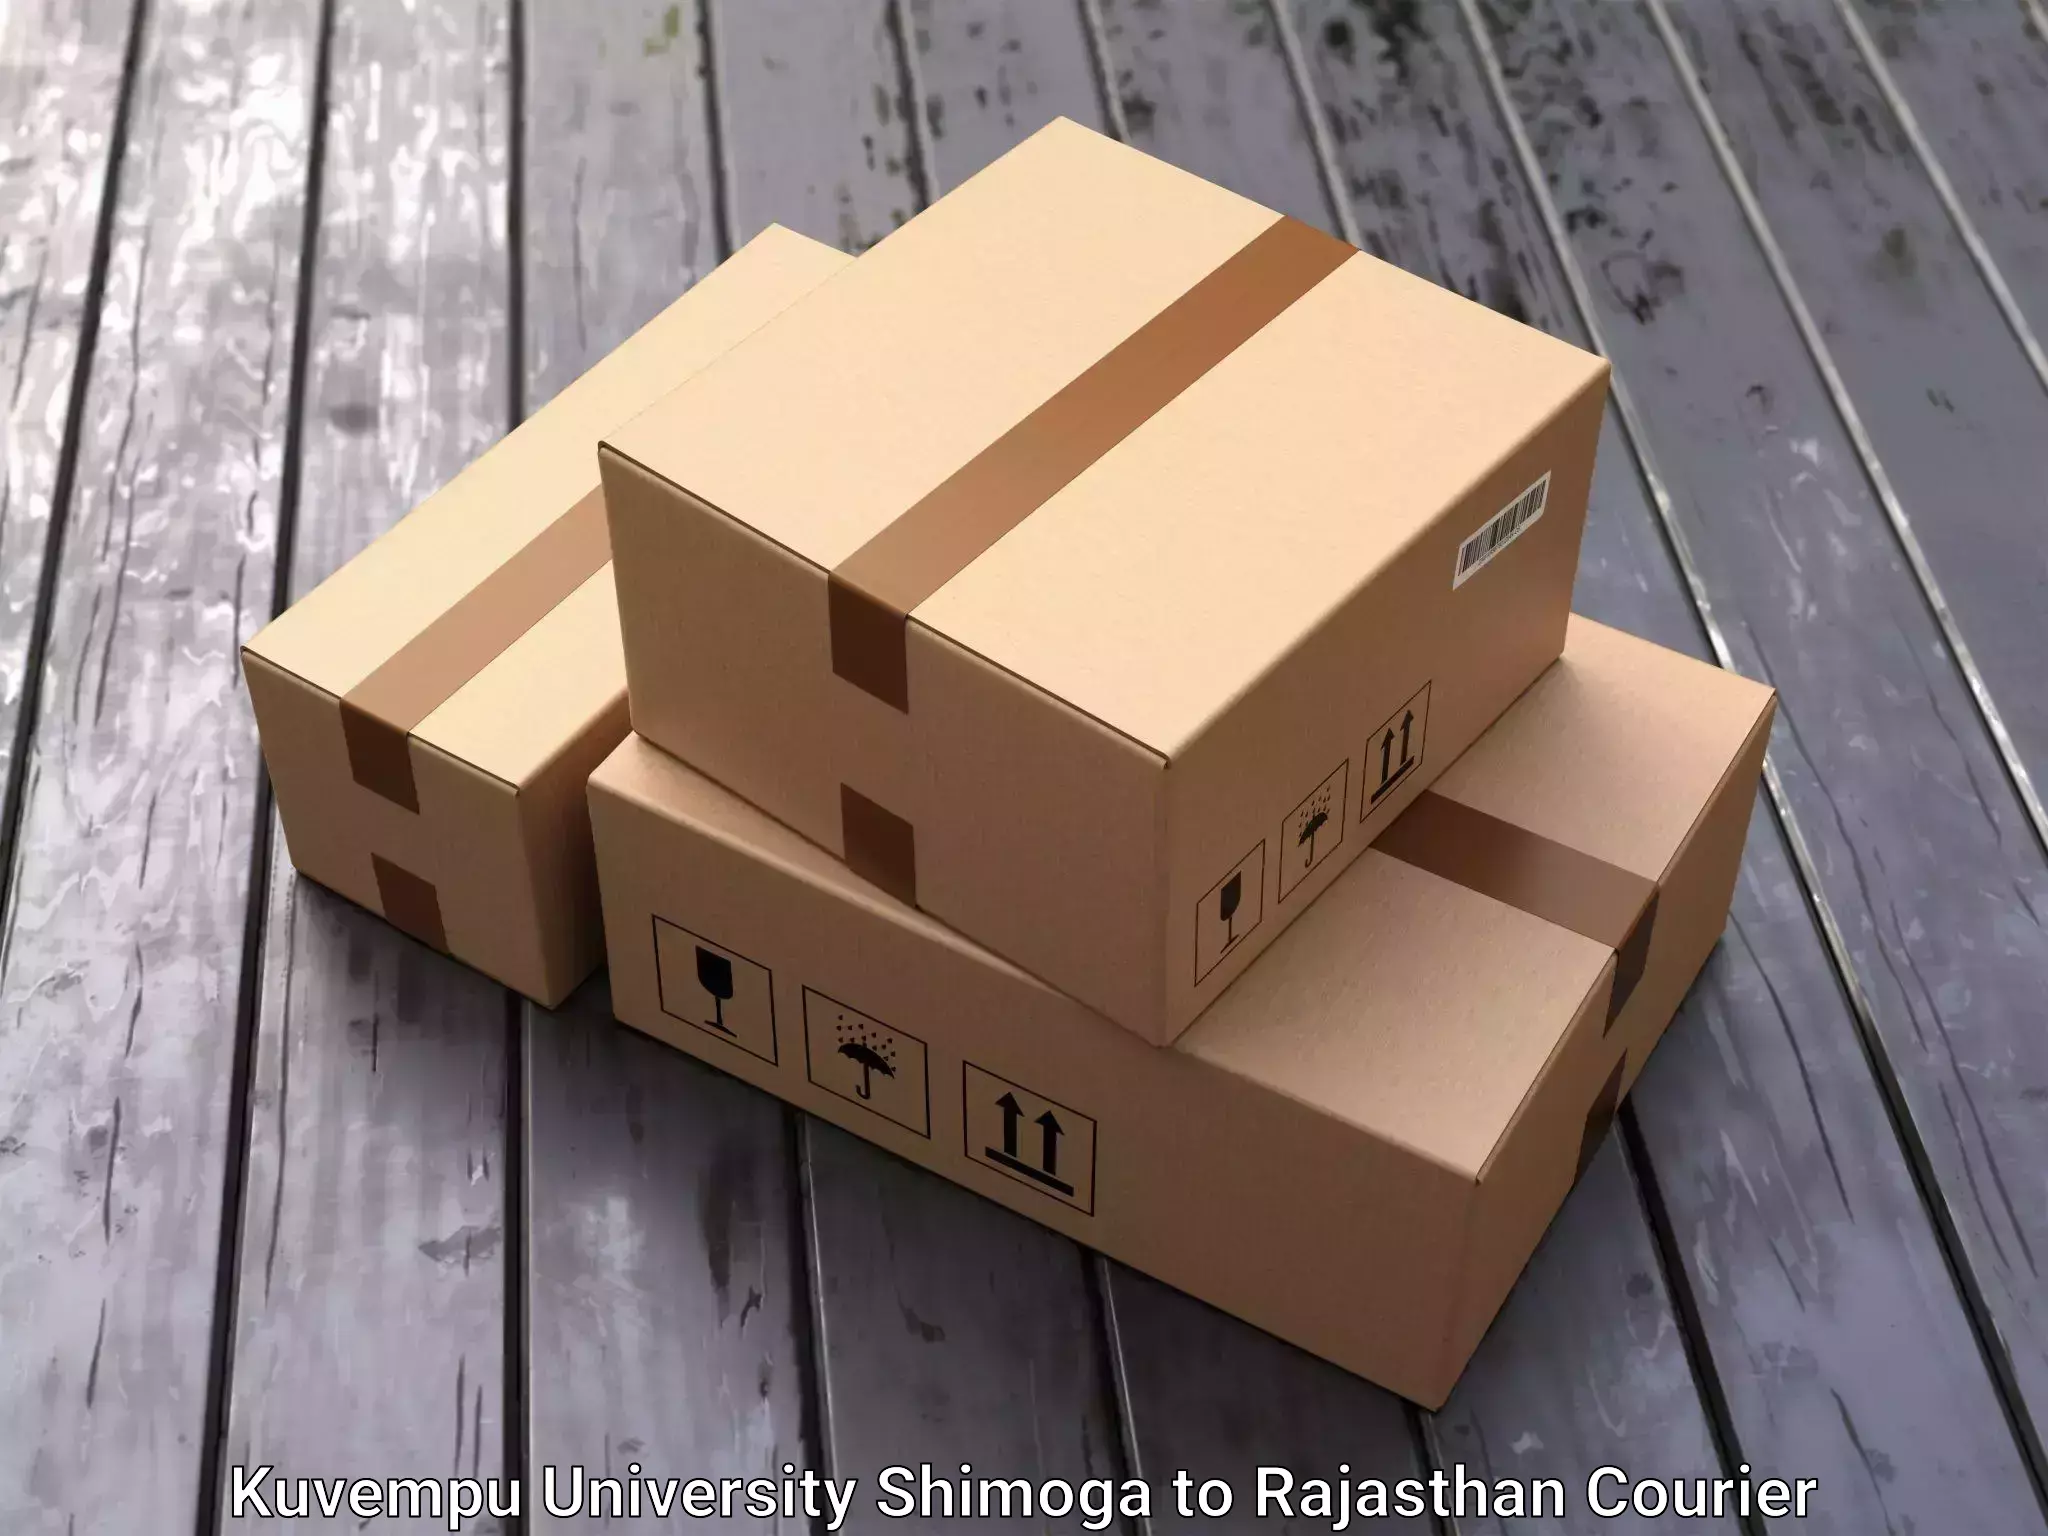 Residential furniture transport in Kuvempu University Shimoga to Rajasthan